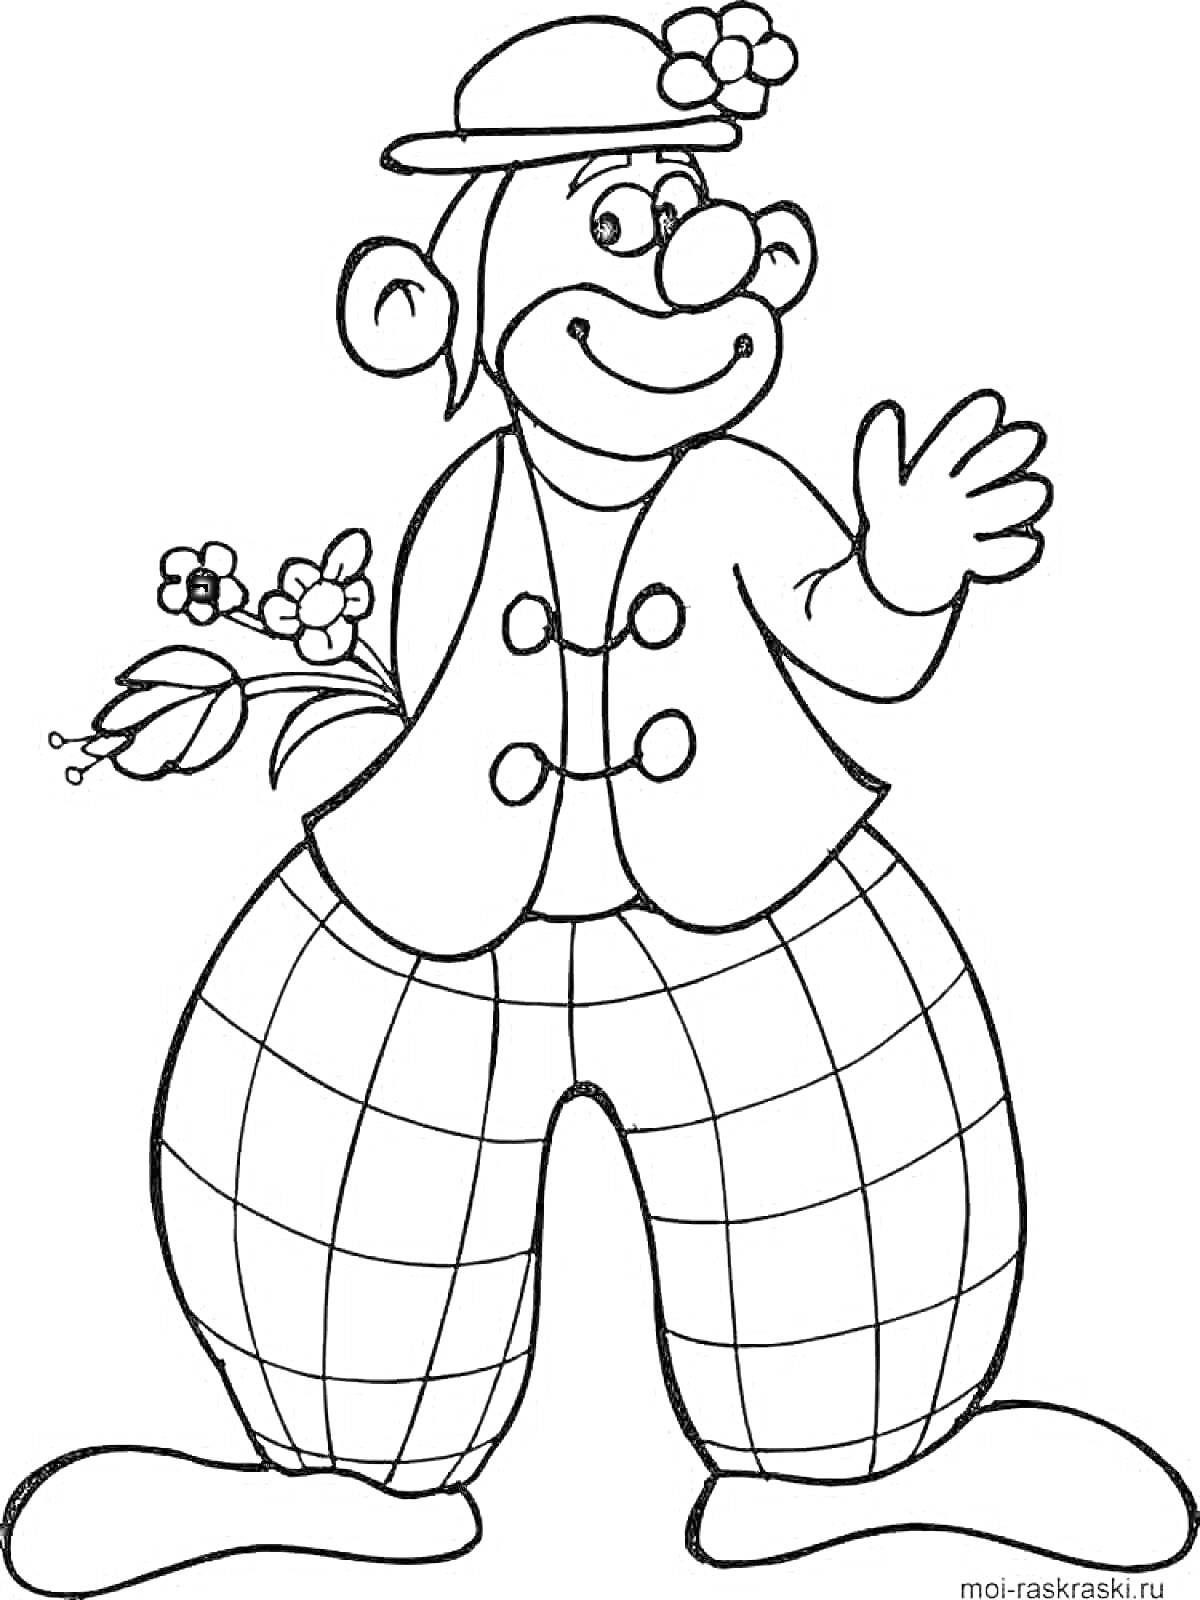 Раскраска Клоун с цветком в руках, в шляпе, с большими клетчатыми штанами и жилетом